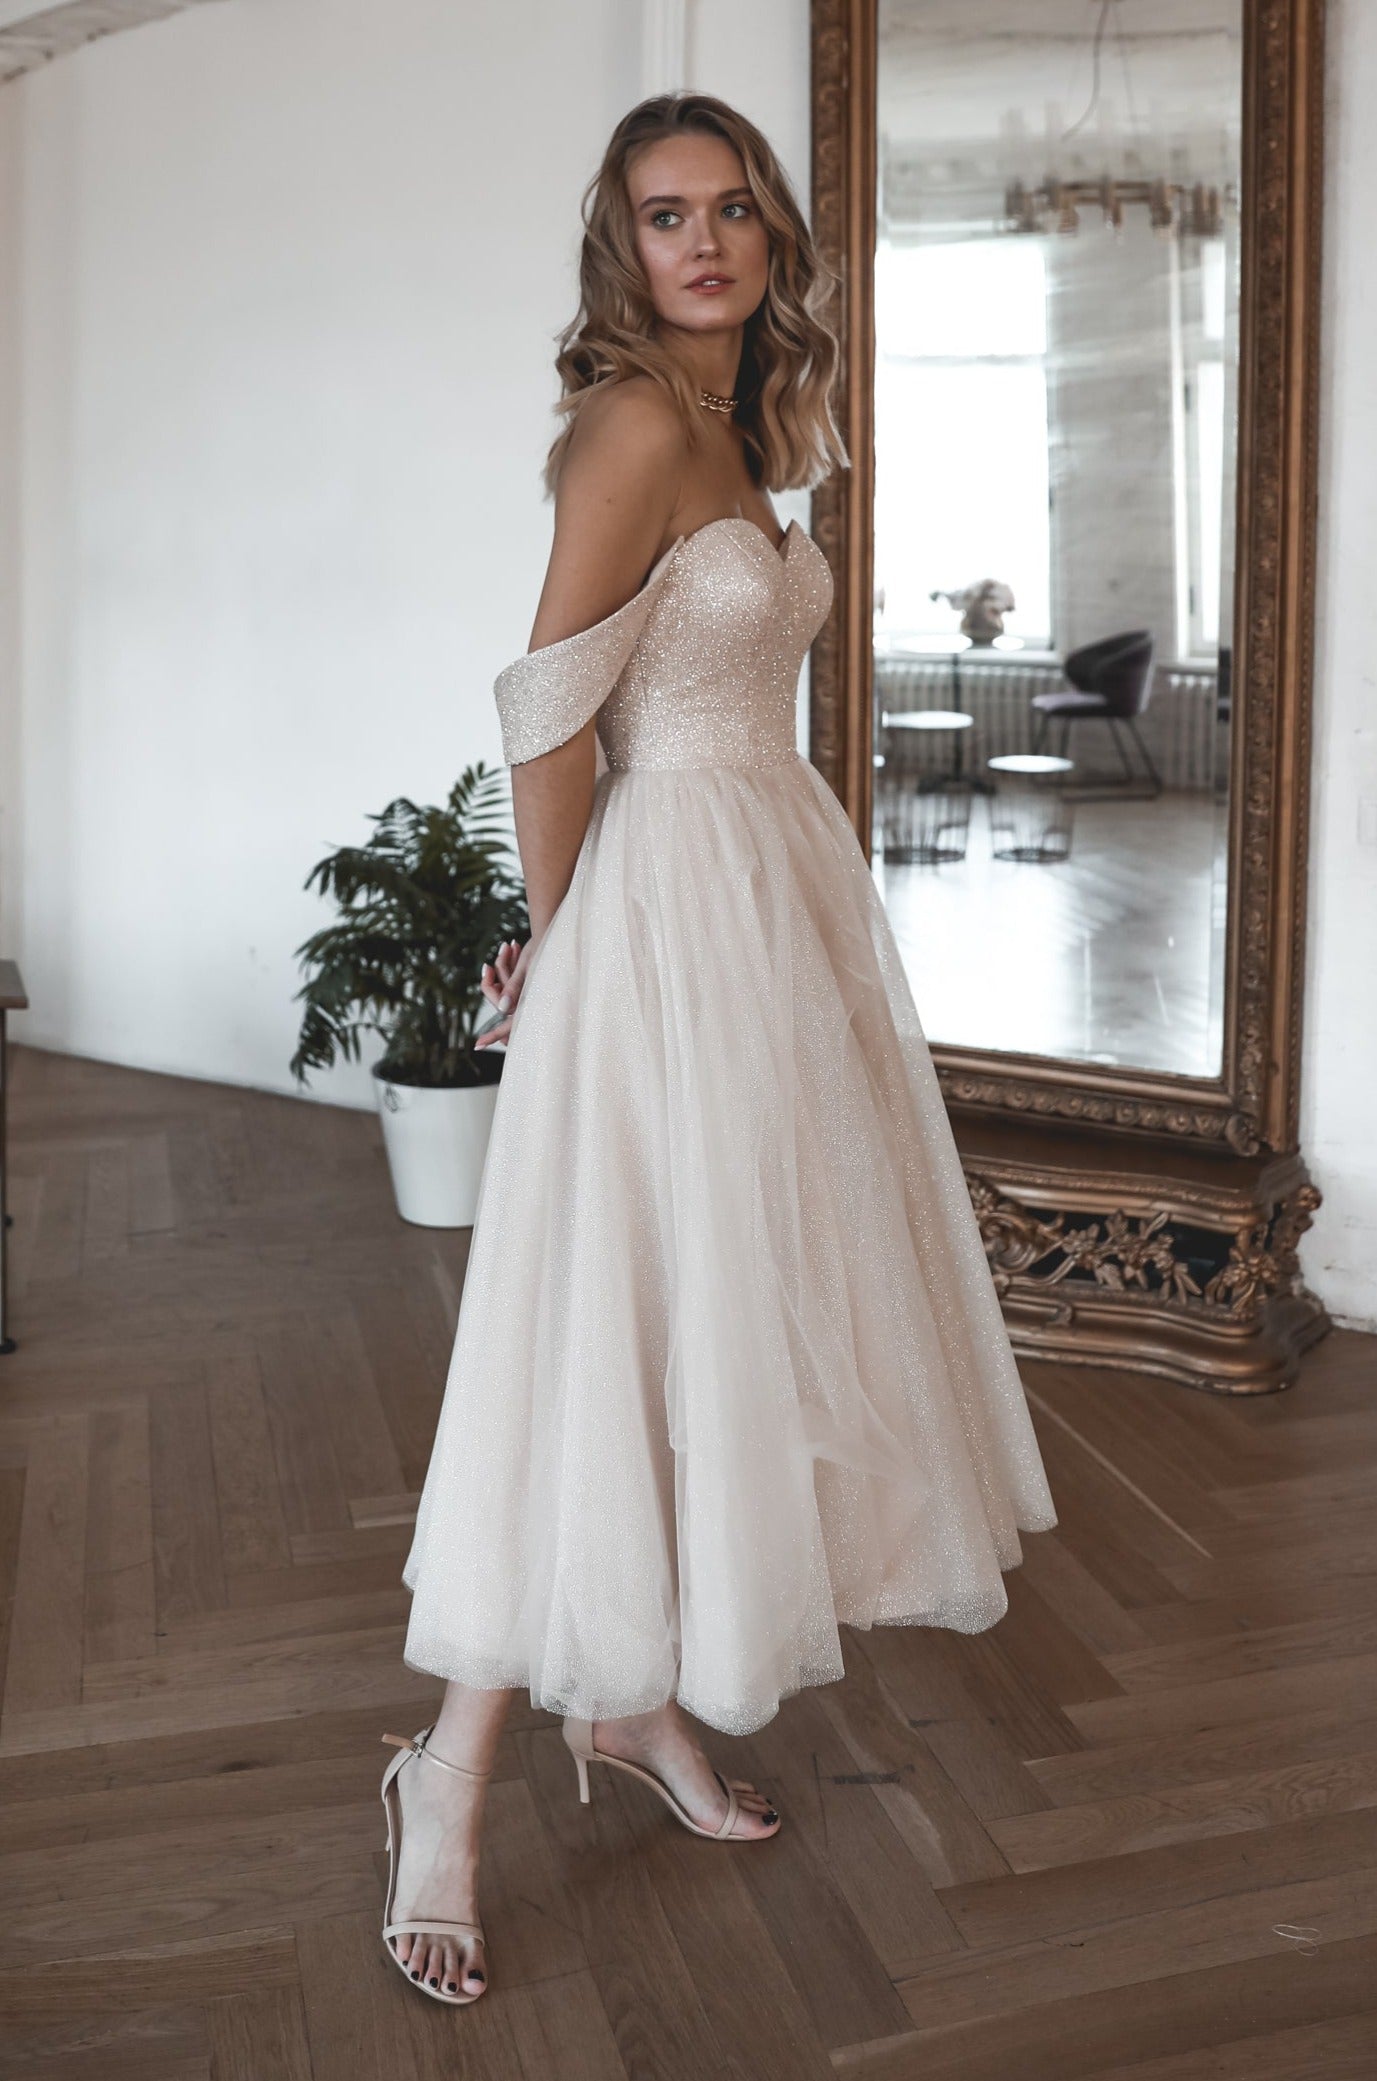 Short White Wedding Dress With Sleeves Modest Reception Dress Elope  Engagement Photoshoot Midi Dress Courthouse Wedding Dress -  Canada